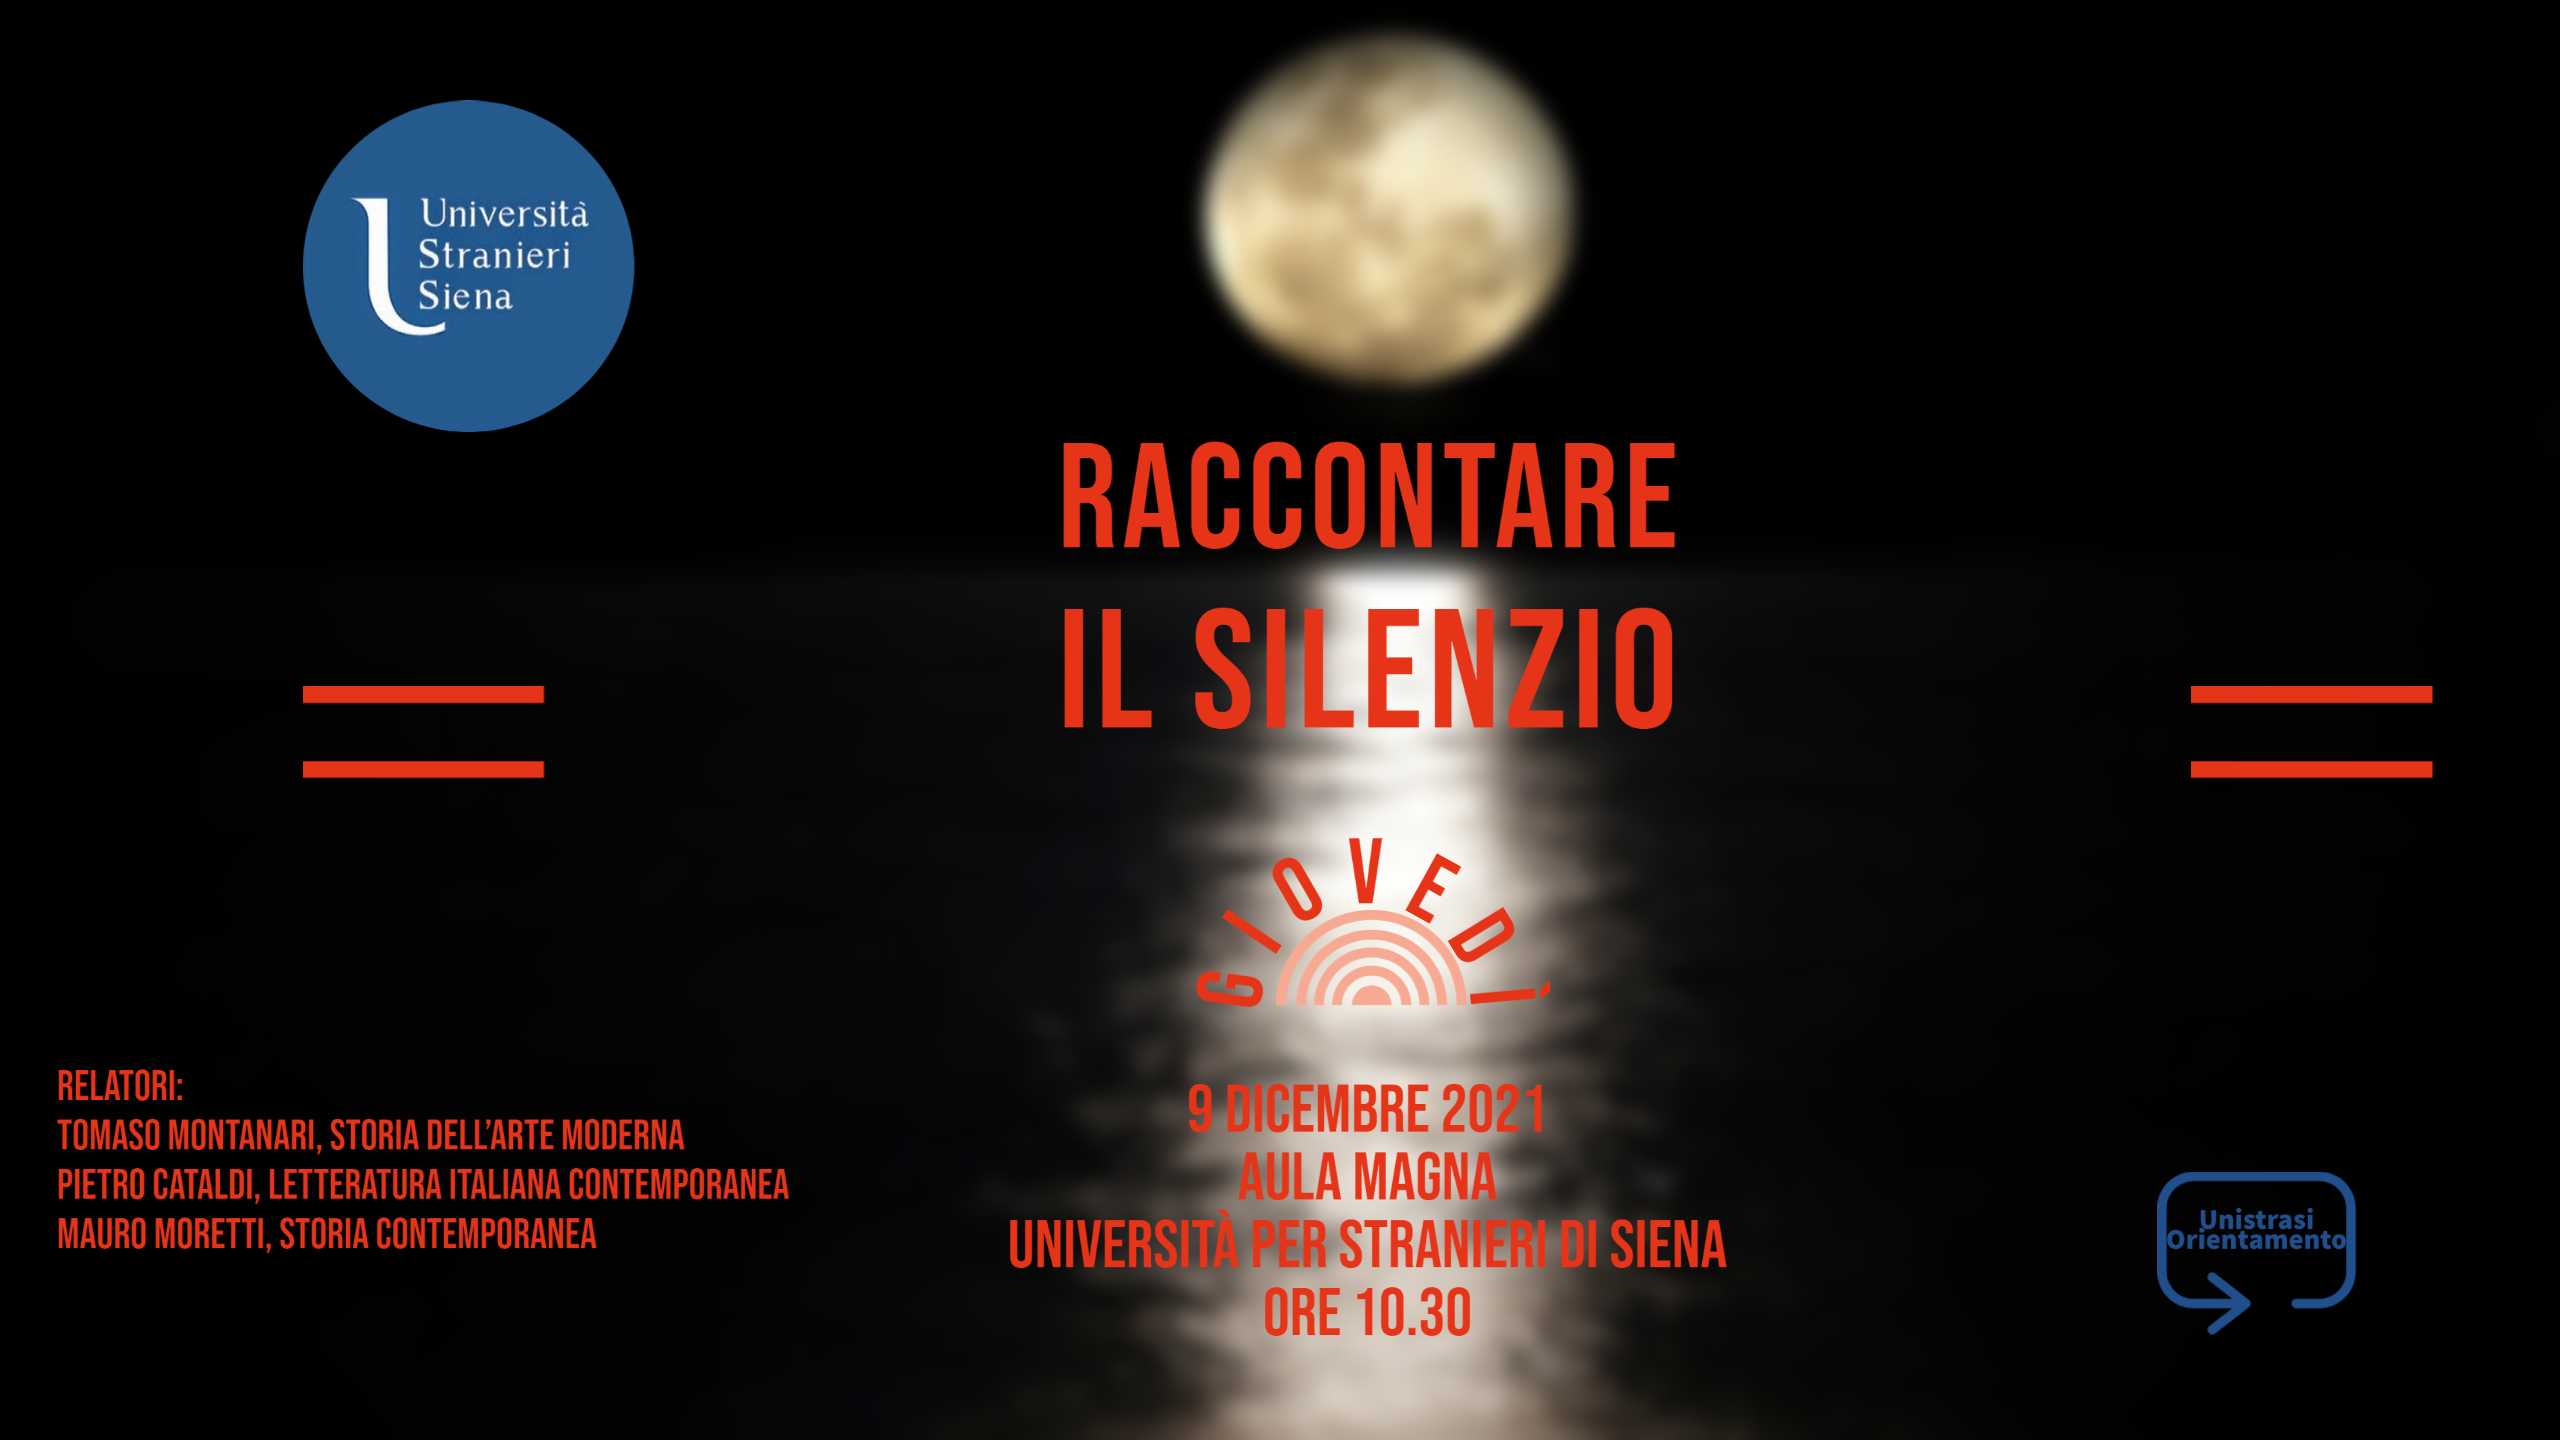 Università per Stranieri di Siena Raccontare il silenzio 1 - 9 dicembre ore 1030 Aula Magna.jpg